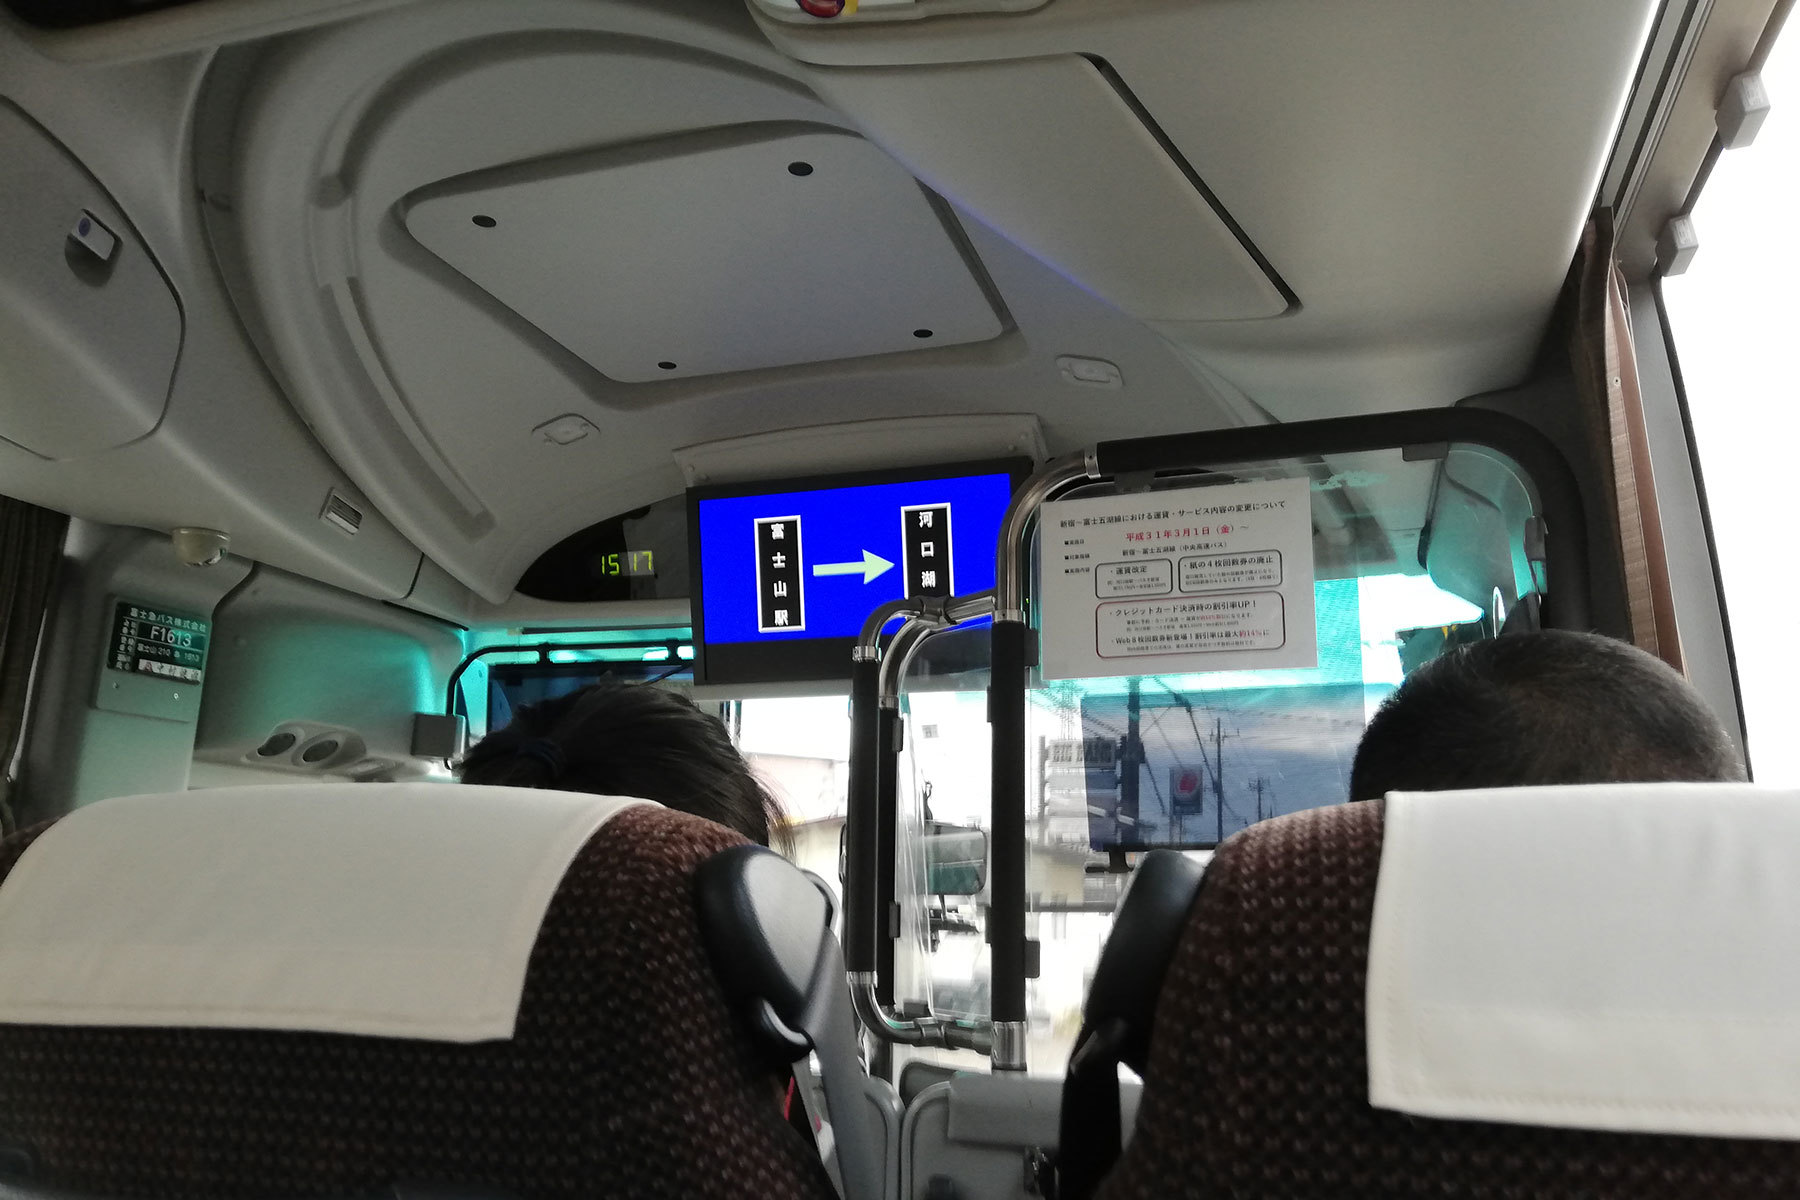 富士急バス / Re:ゼロから始める富士急ハイランド生活ラッピングバス_d0226909_19550833.jpg